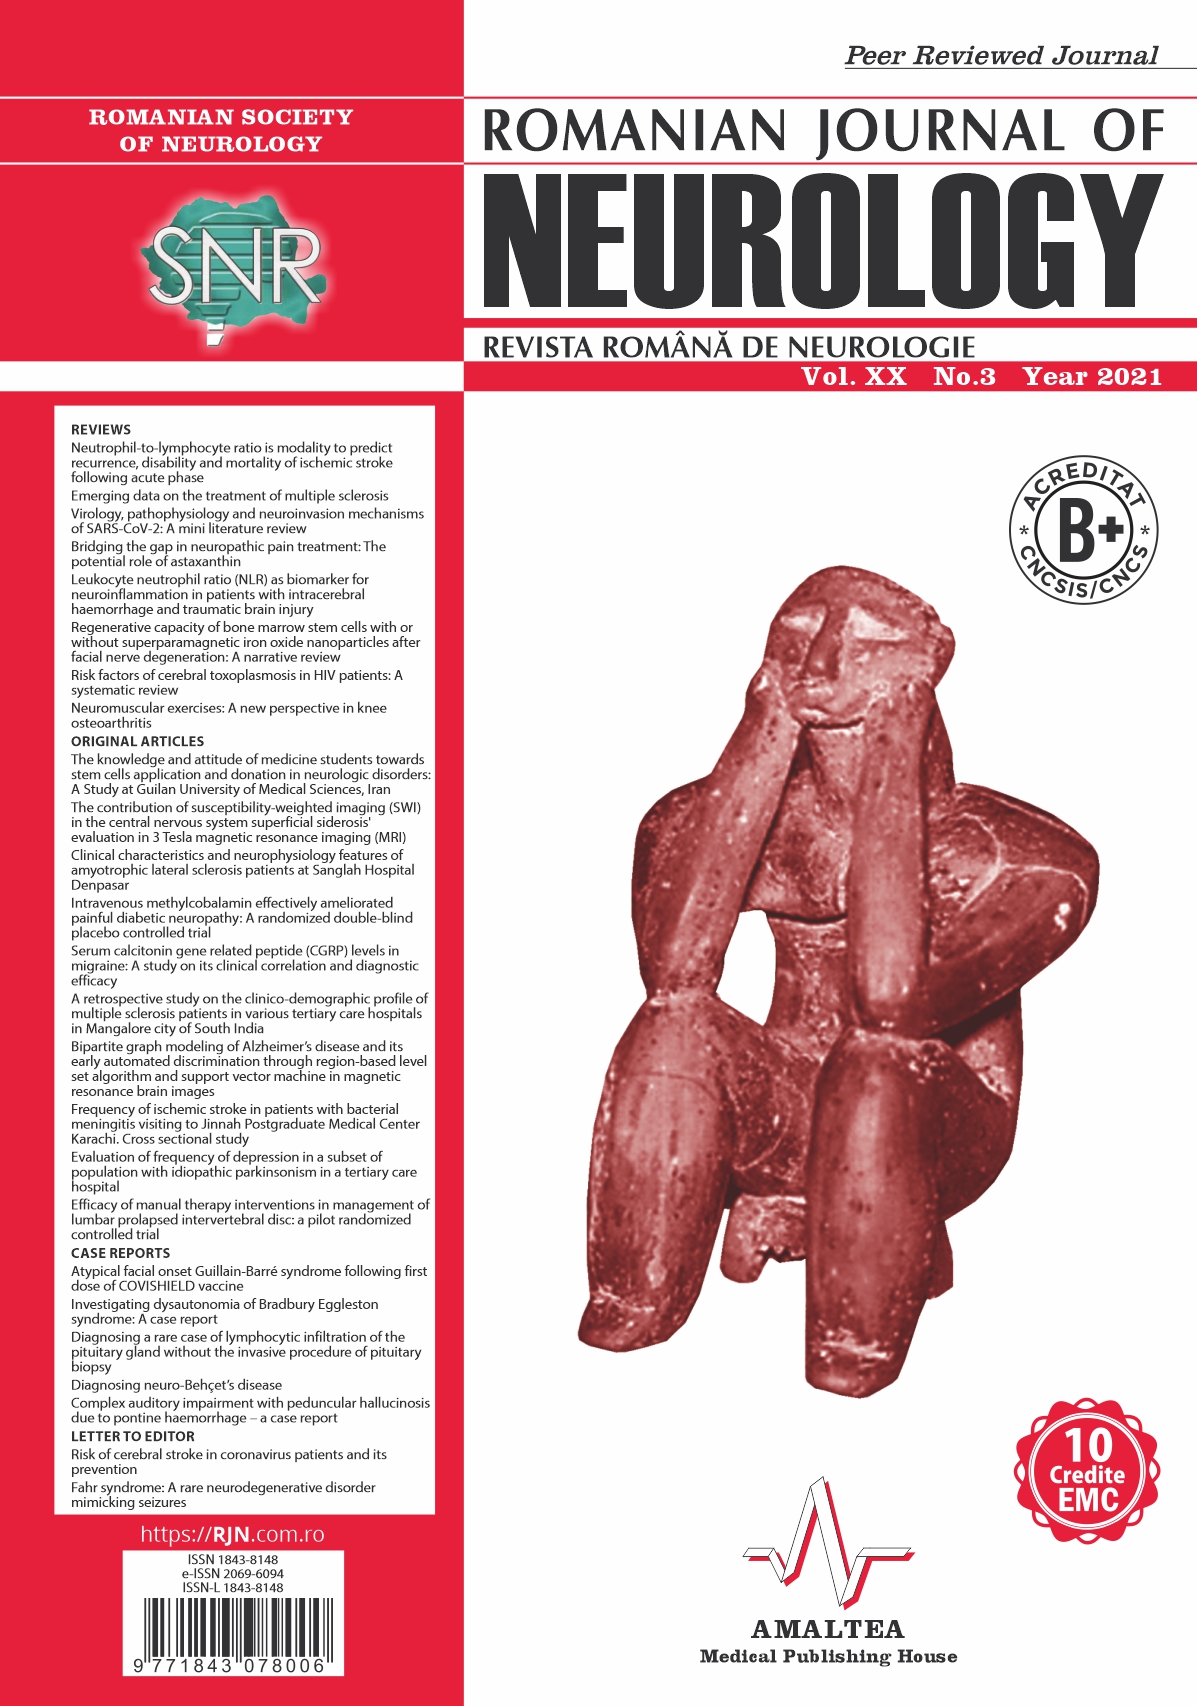 Romanian Journal of Neurology, Volume XX, No. 3, 2021